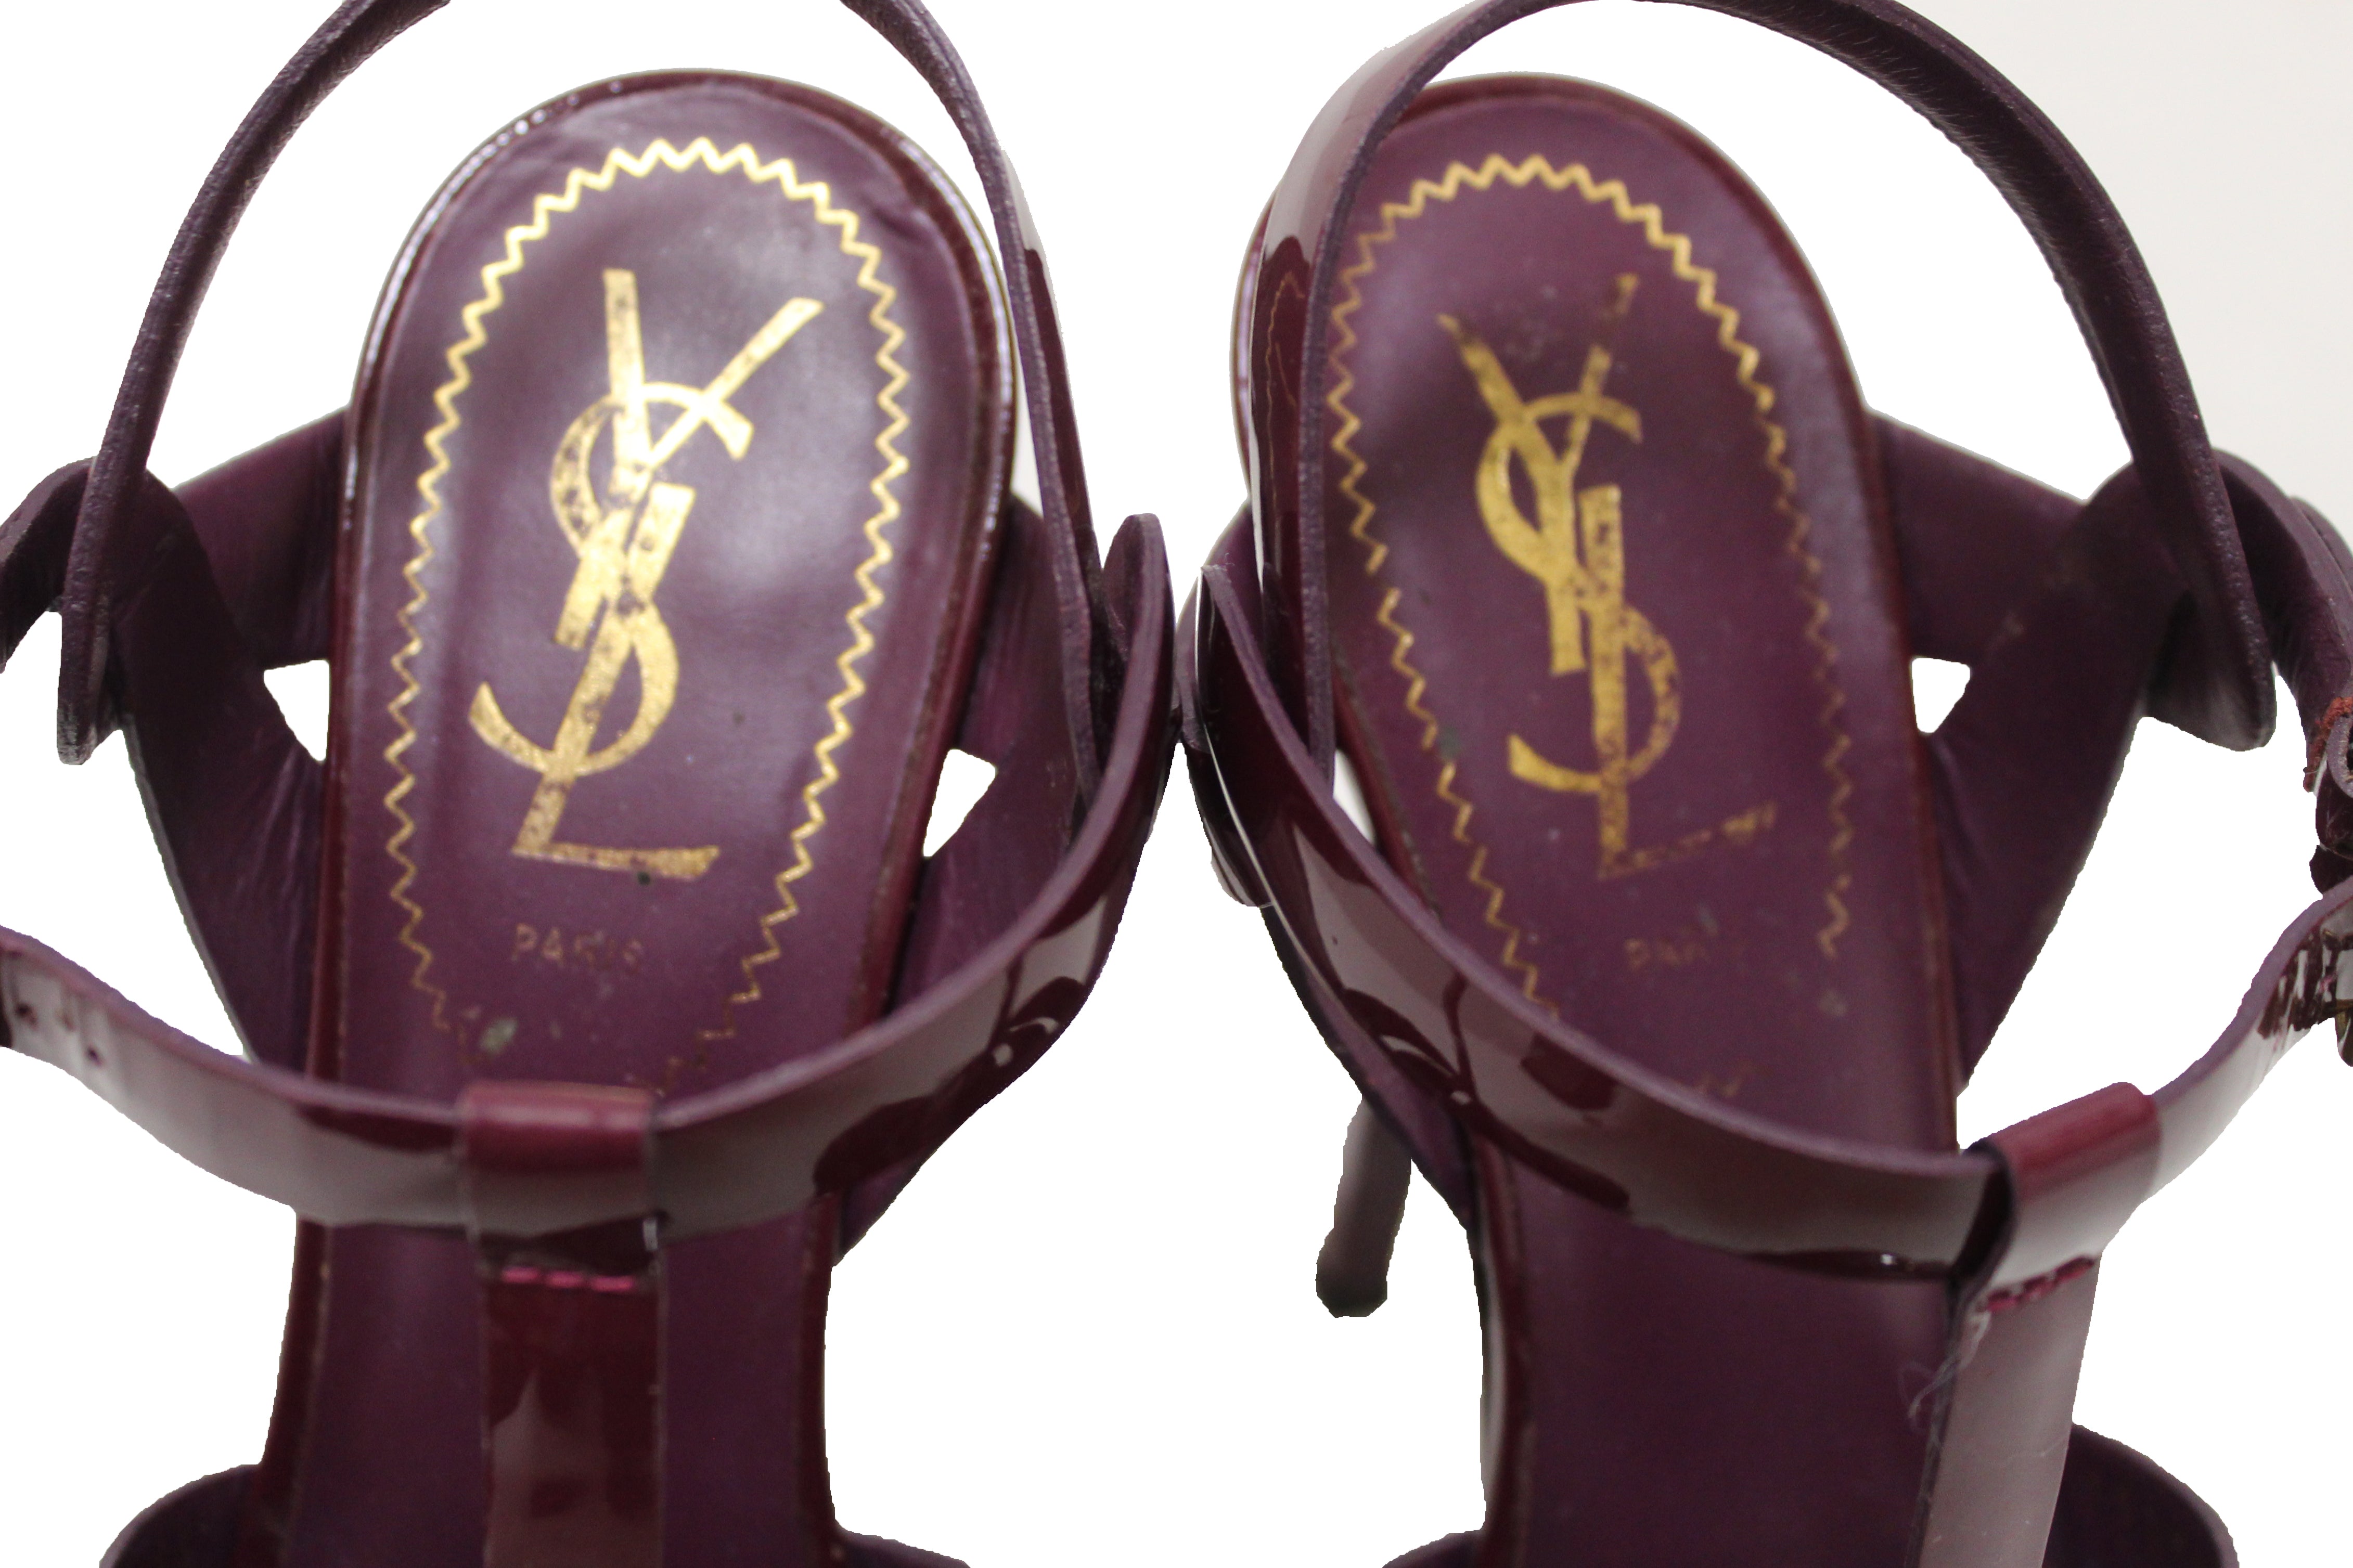 Authentic YSL Saint Laurent Burgundy Patent Leather Tribute Platform Sandal Shoes Size 35